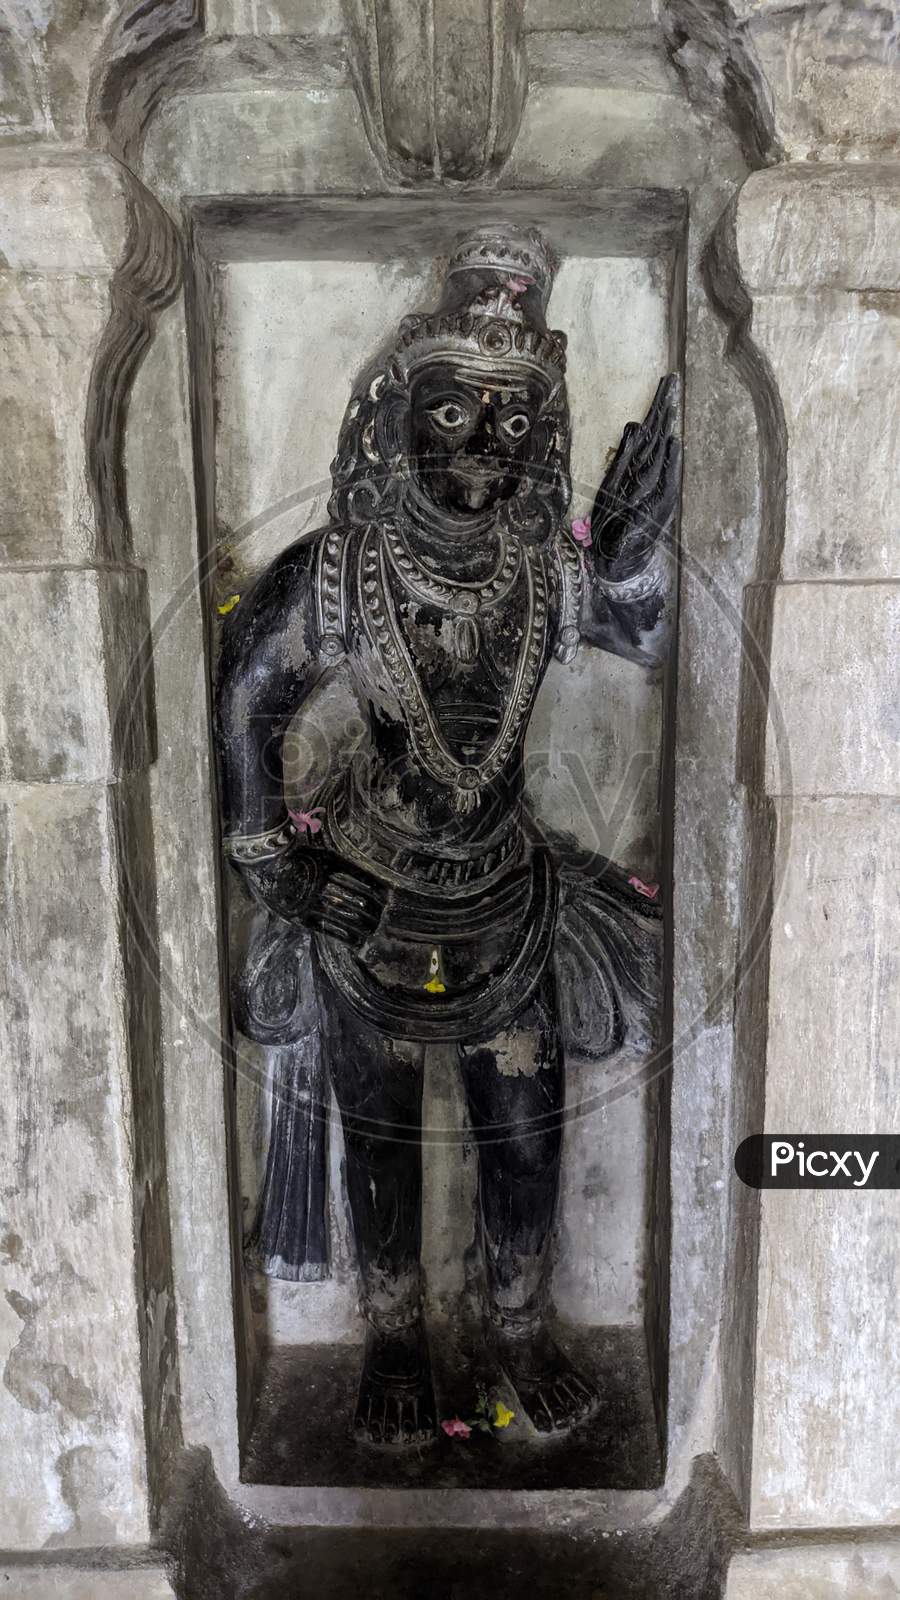 7th century sculptures in undavalli caves in india